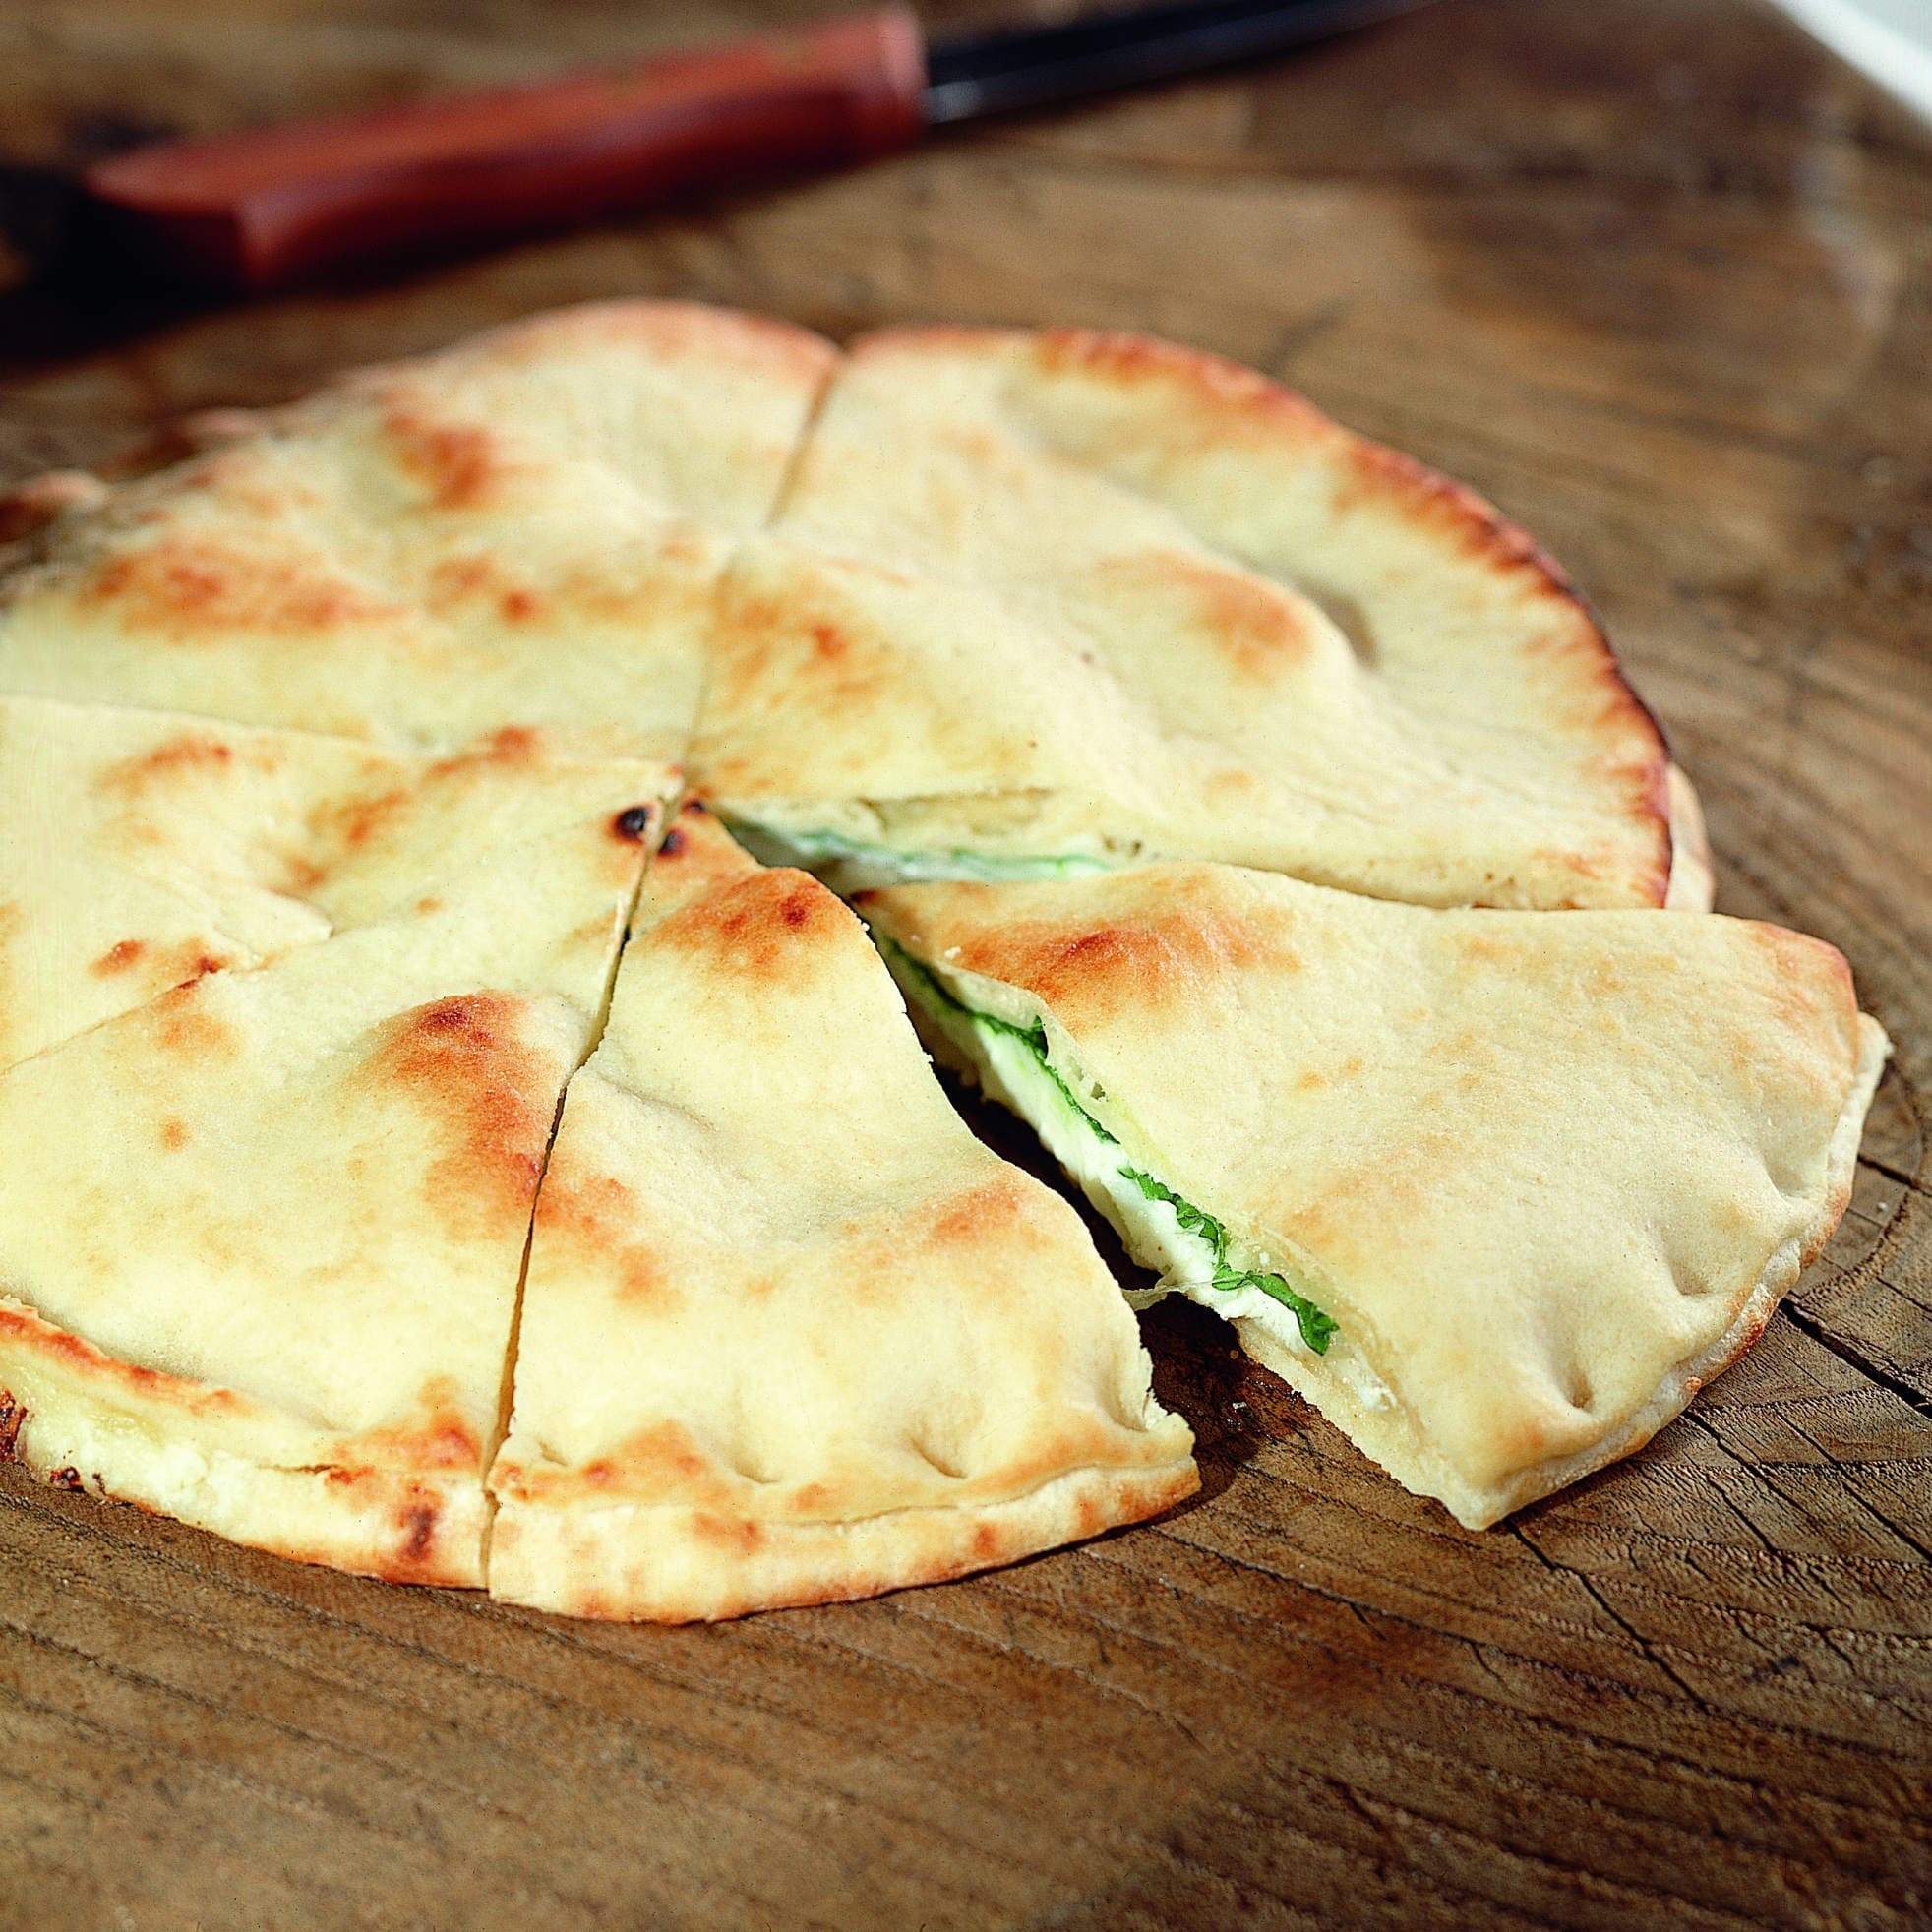 Focaccia Mozzarella e Rucola Bindi è una focaccia farcita con mozzarella e rucola, con olio extra vergine di oliva.